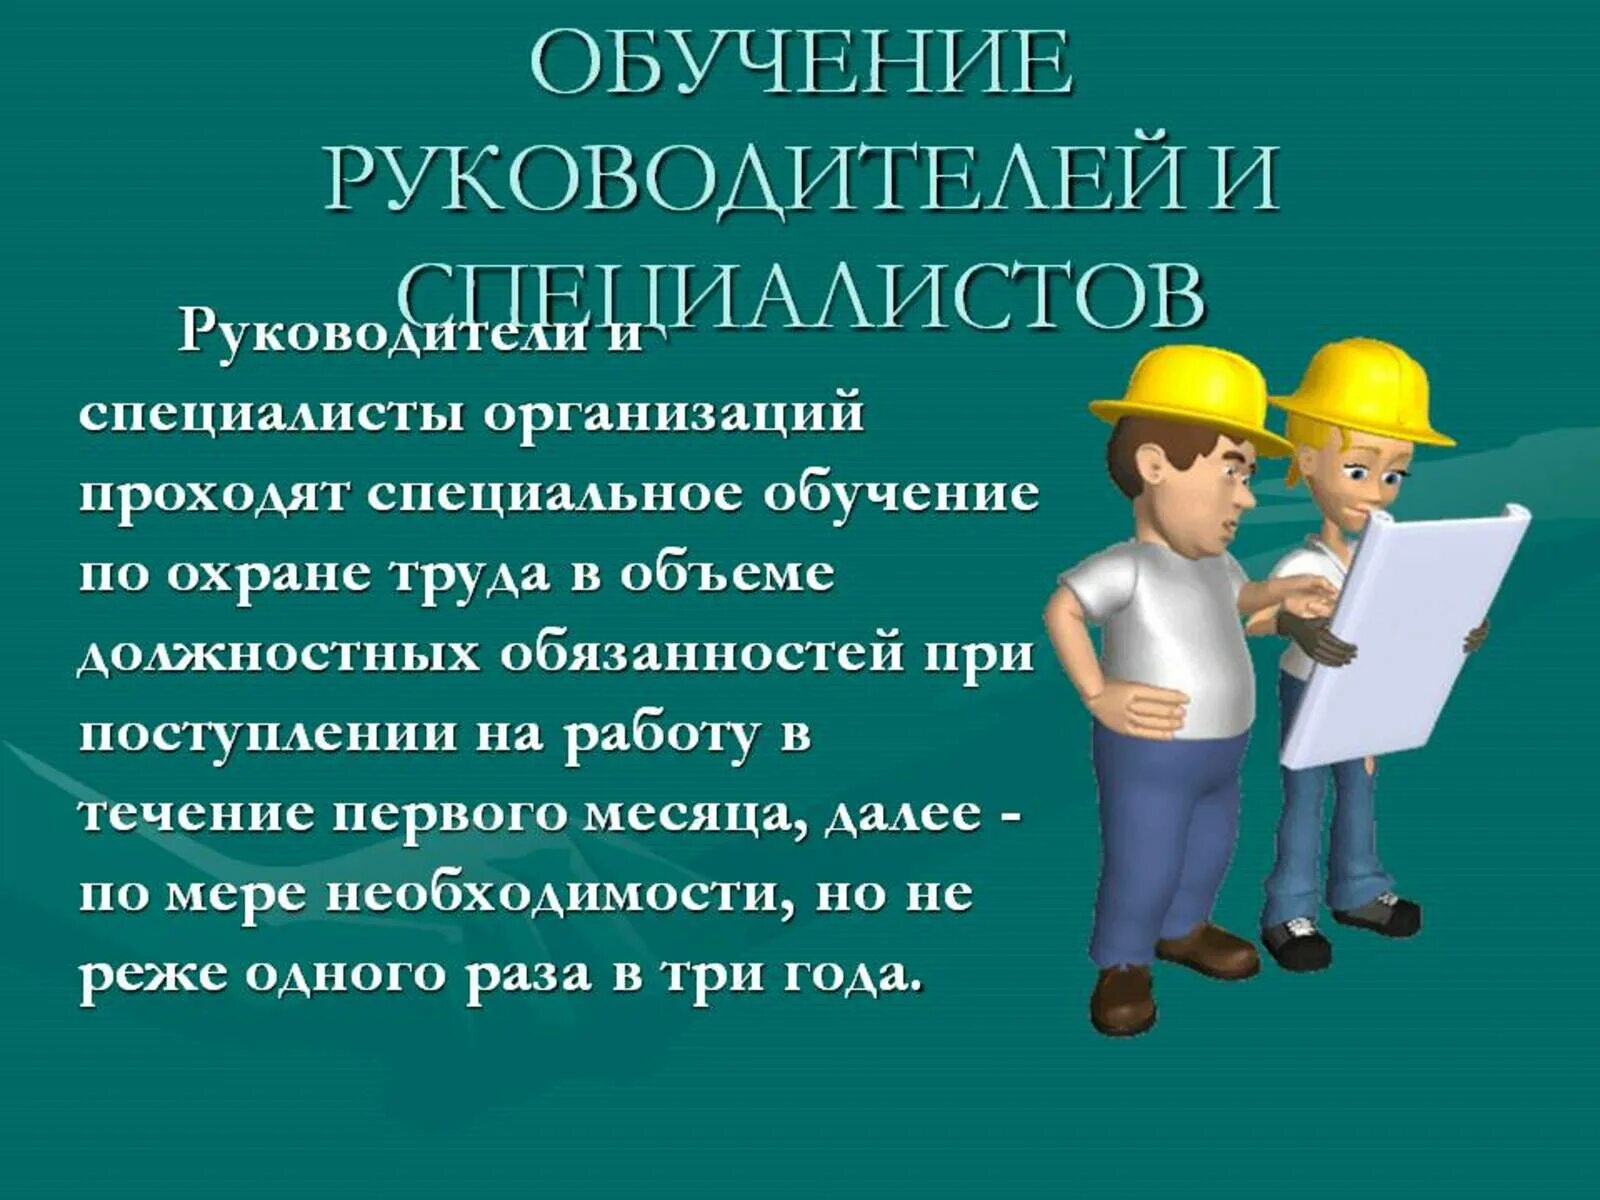 Охрана труда зрения. Охрана труда. Подготовка охрана труда. Иллюстрации по охране труда. Обучение по охране труда для руководителей.